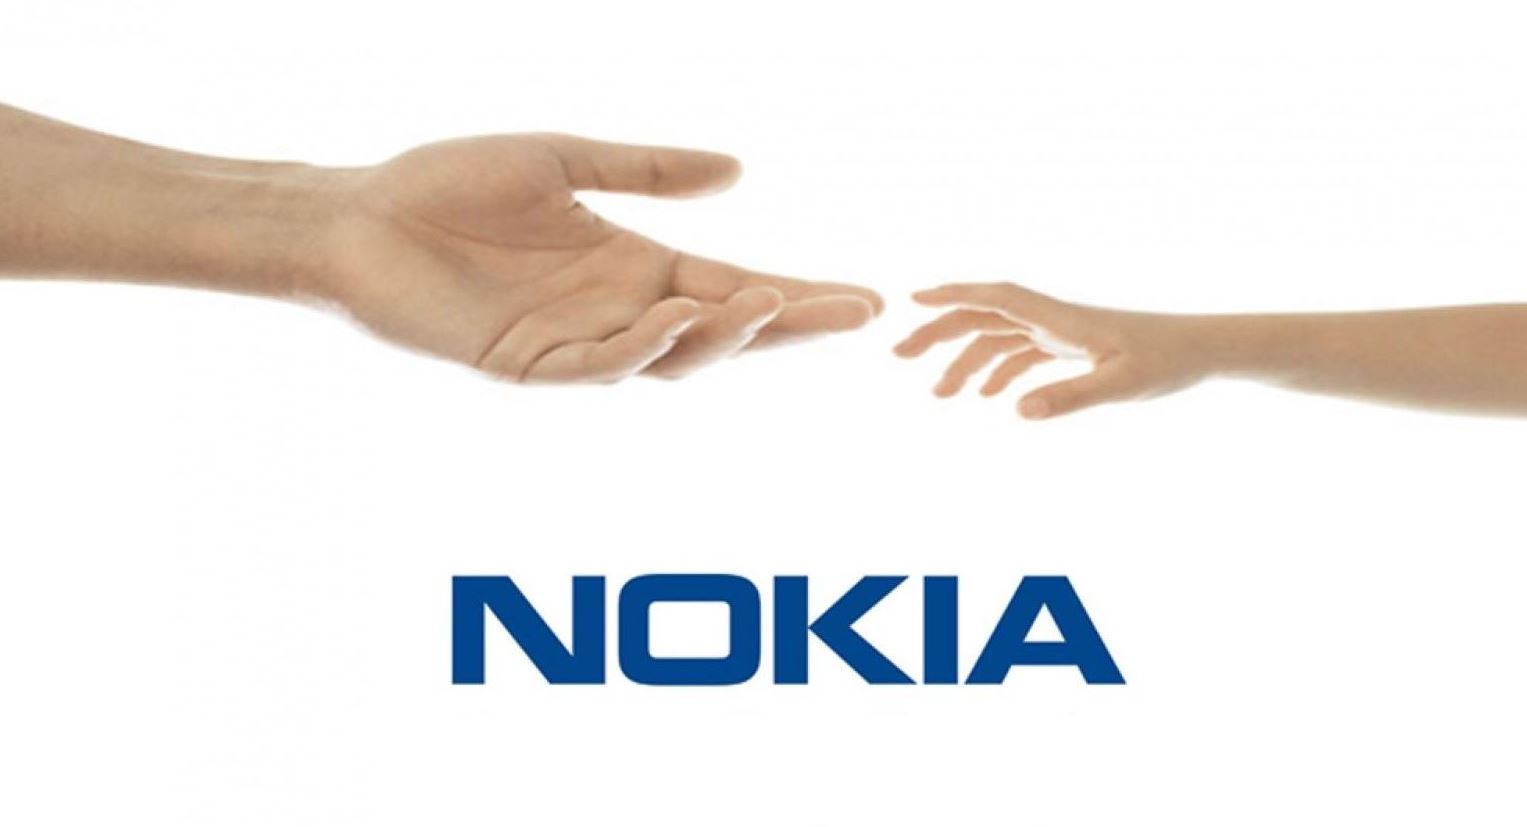 Los teléfonos Nokia se remanufacturan en Hungría